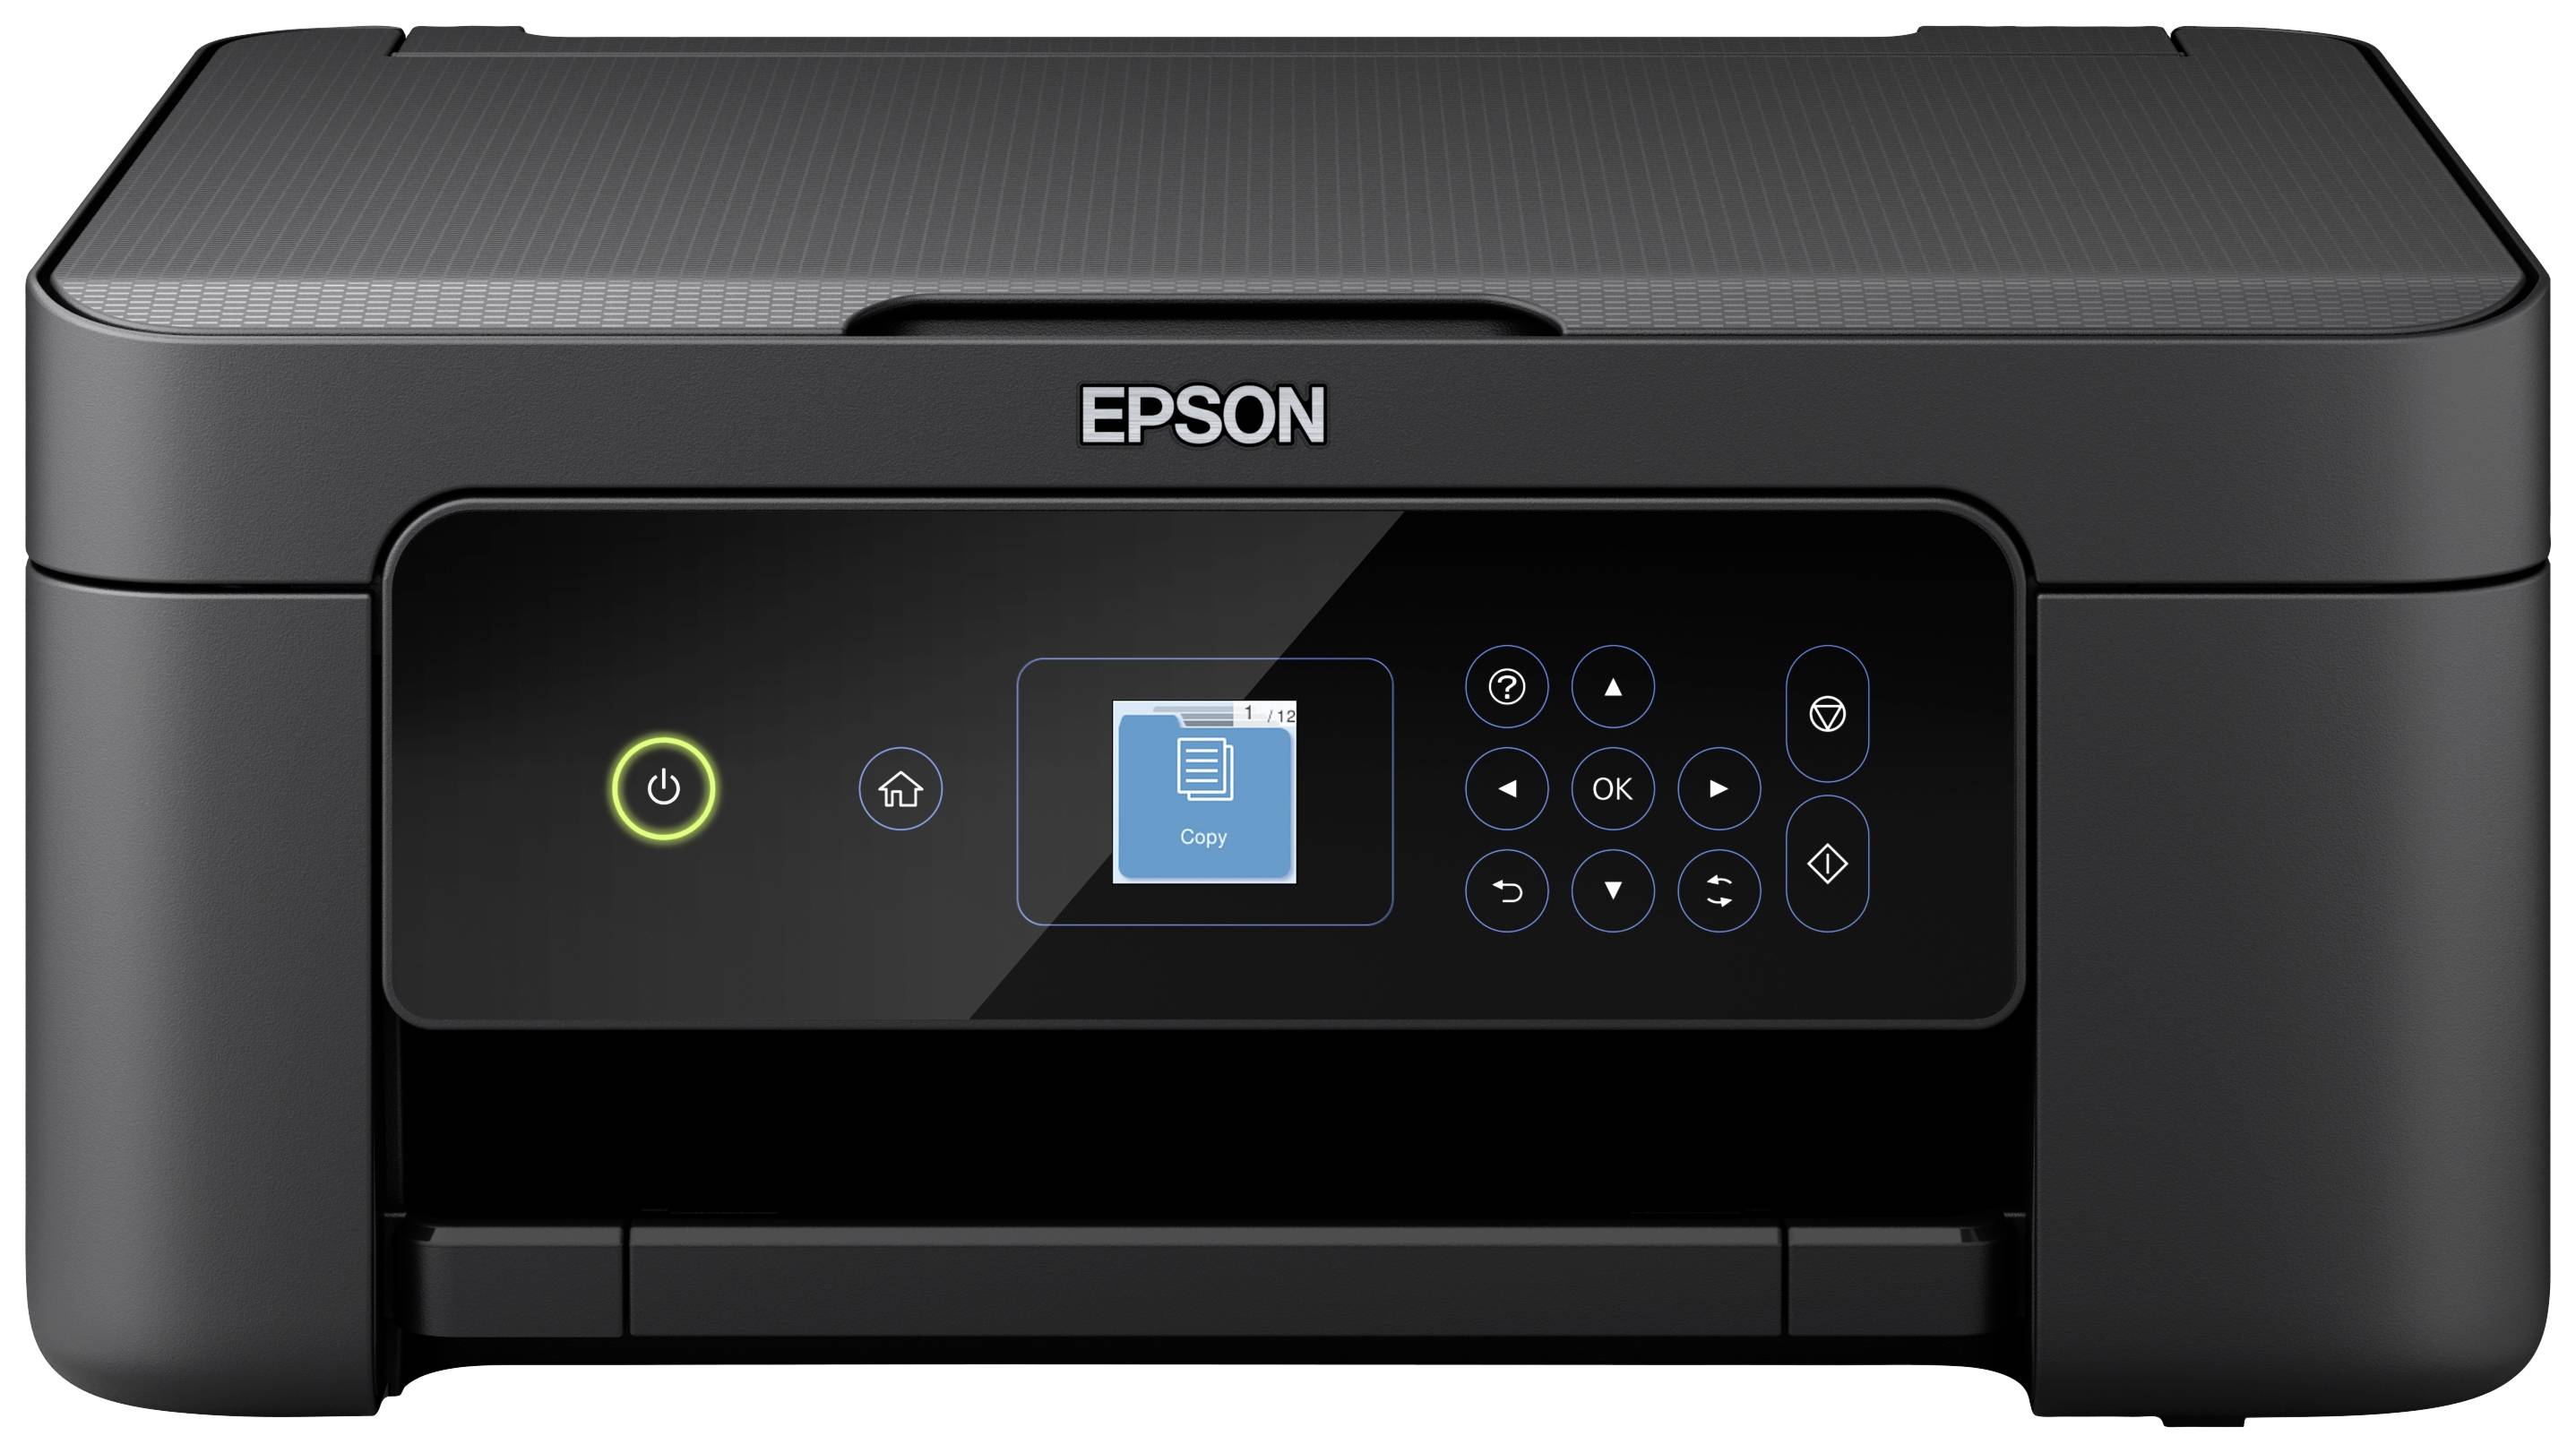 Epson Expression Home Tintenstrahl Multifunktionsdrucker kaufen A4 Duplex, Kopierer Scanner, XP-3205 Farb USB, Drucker, WLAN